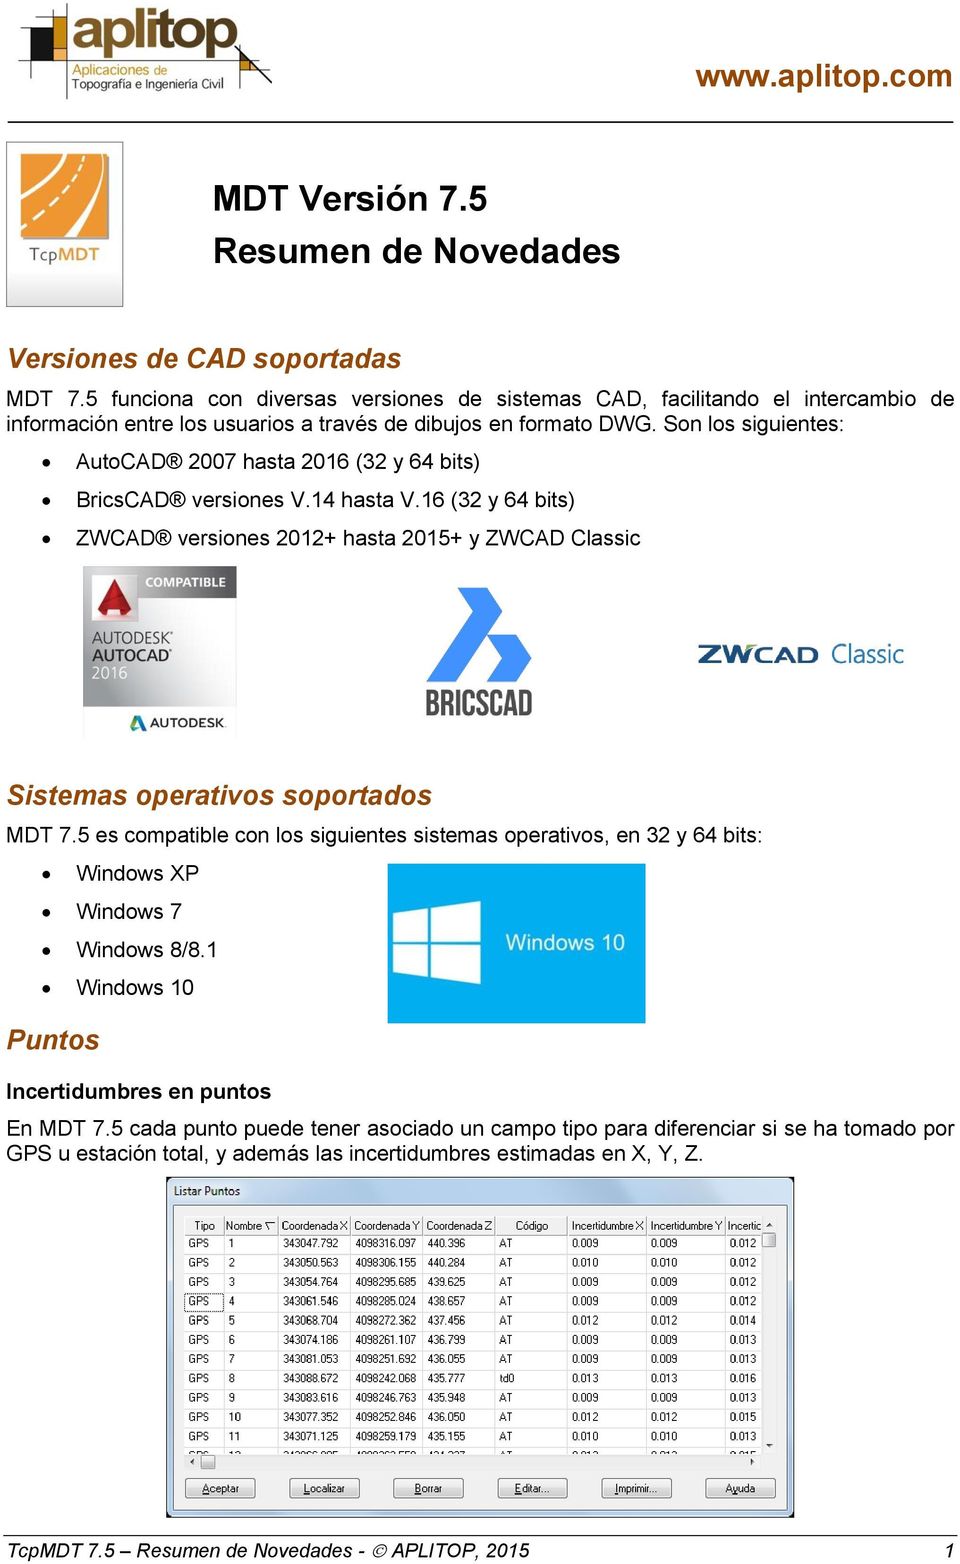 Son los siguientes: AutoCAD 2007 hasta 2016 (32 y 64 bits) BricsCAD versiones V.14 hasta V.16 (32 y 64 bits) ZWCAD versiones 2012+ hasta 2015+ y ZWCAD Classic Sistemas operativos soportados MDT 7.